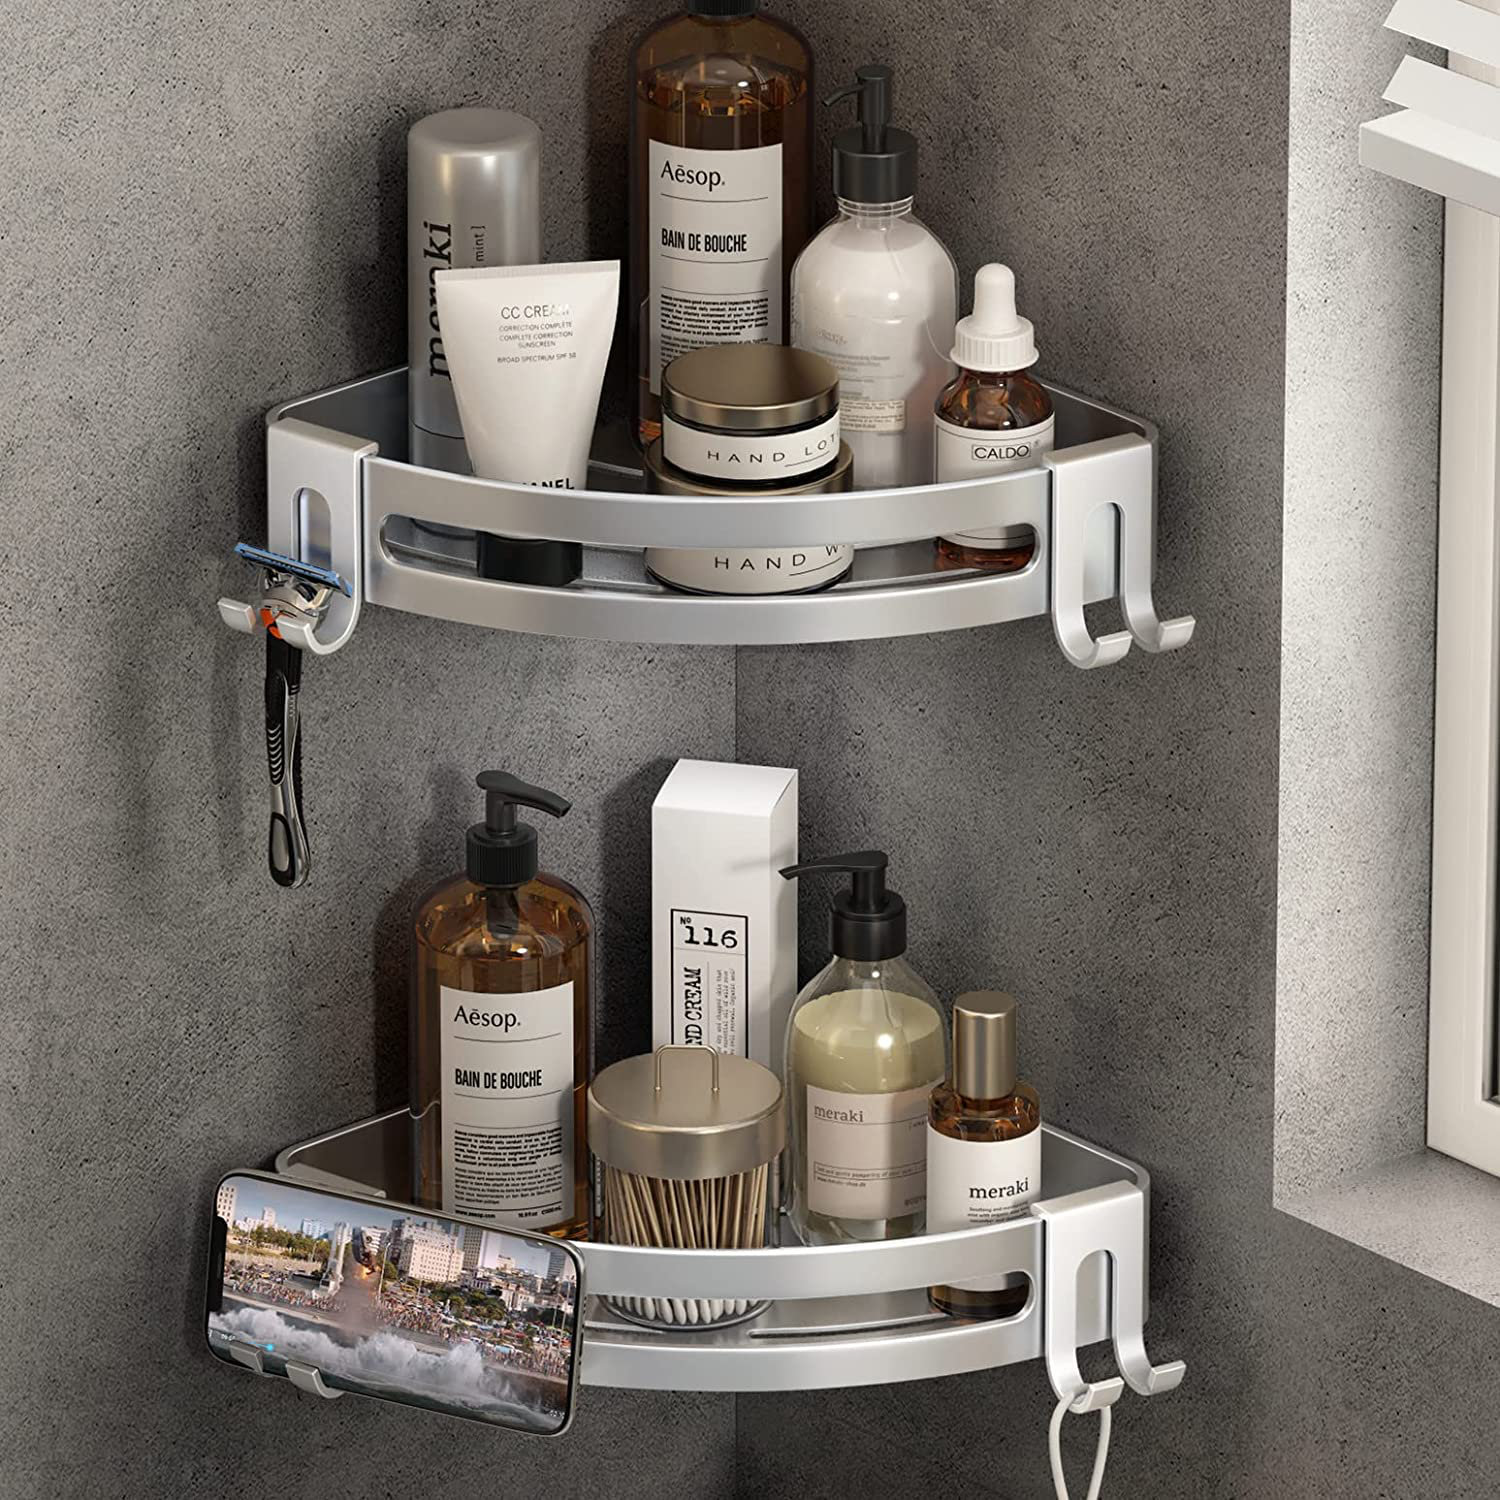 https://assets.wfcdn.com/im/35044302/compr-r85/2207/220712732/ljudmila-corner-shower-caddy-with-razor-holder-adhesive-shower-shelf-bathroom-shower-organizer-storage-rack.jpg